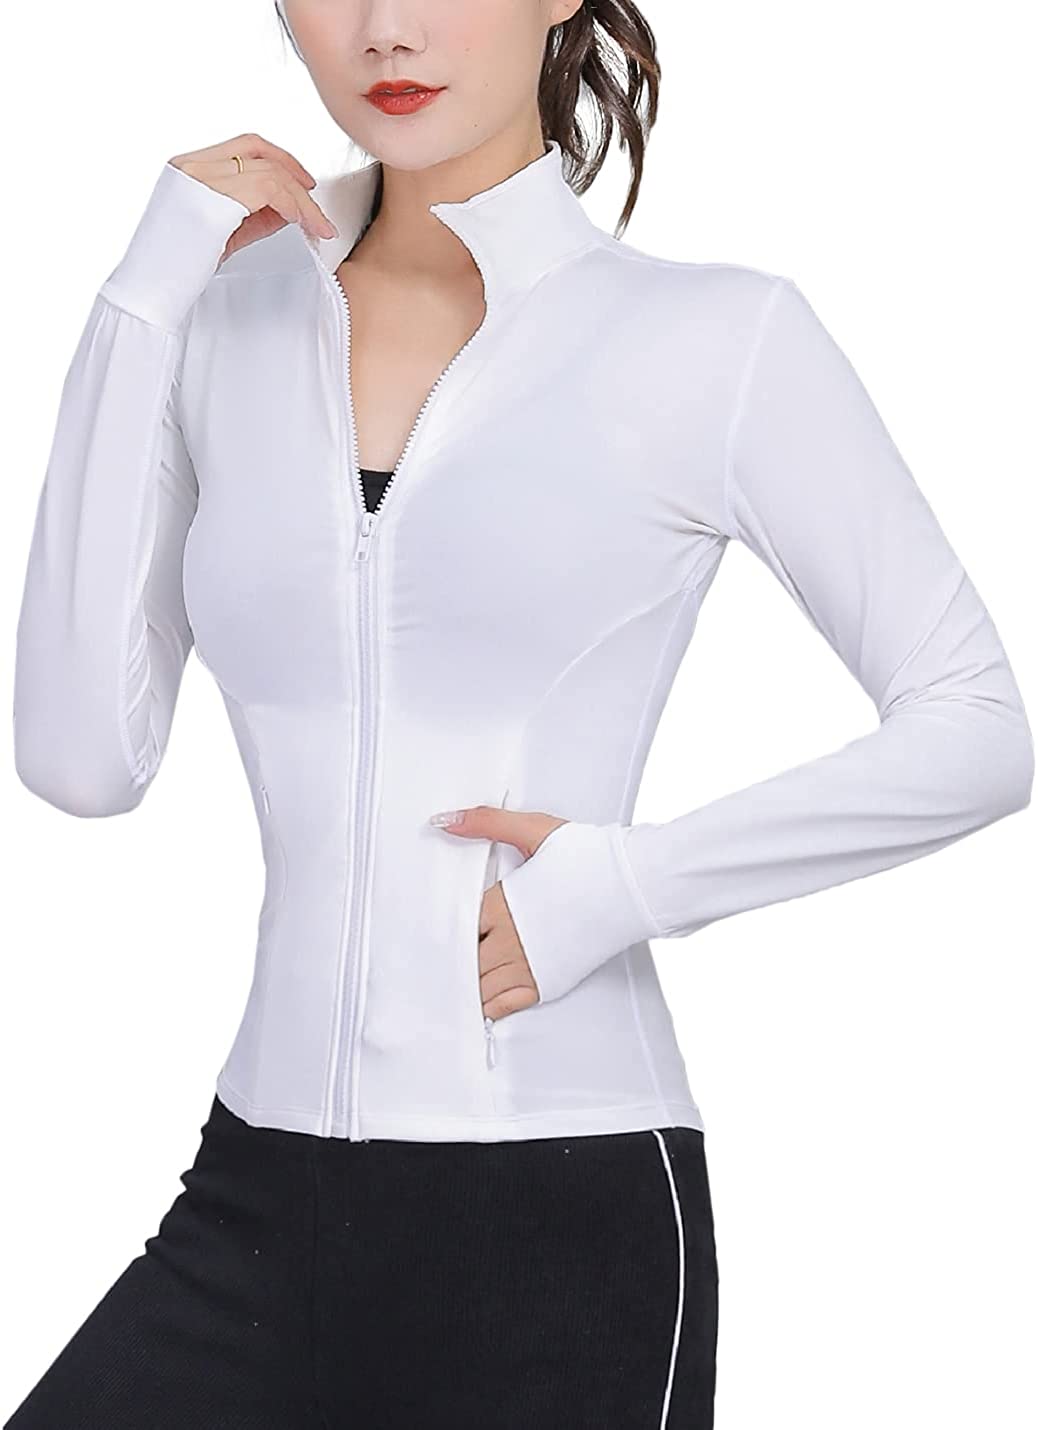 COWOKA Women's Slim Fit Full Zip Sleeveless Running Track Jacket